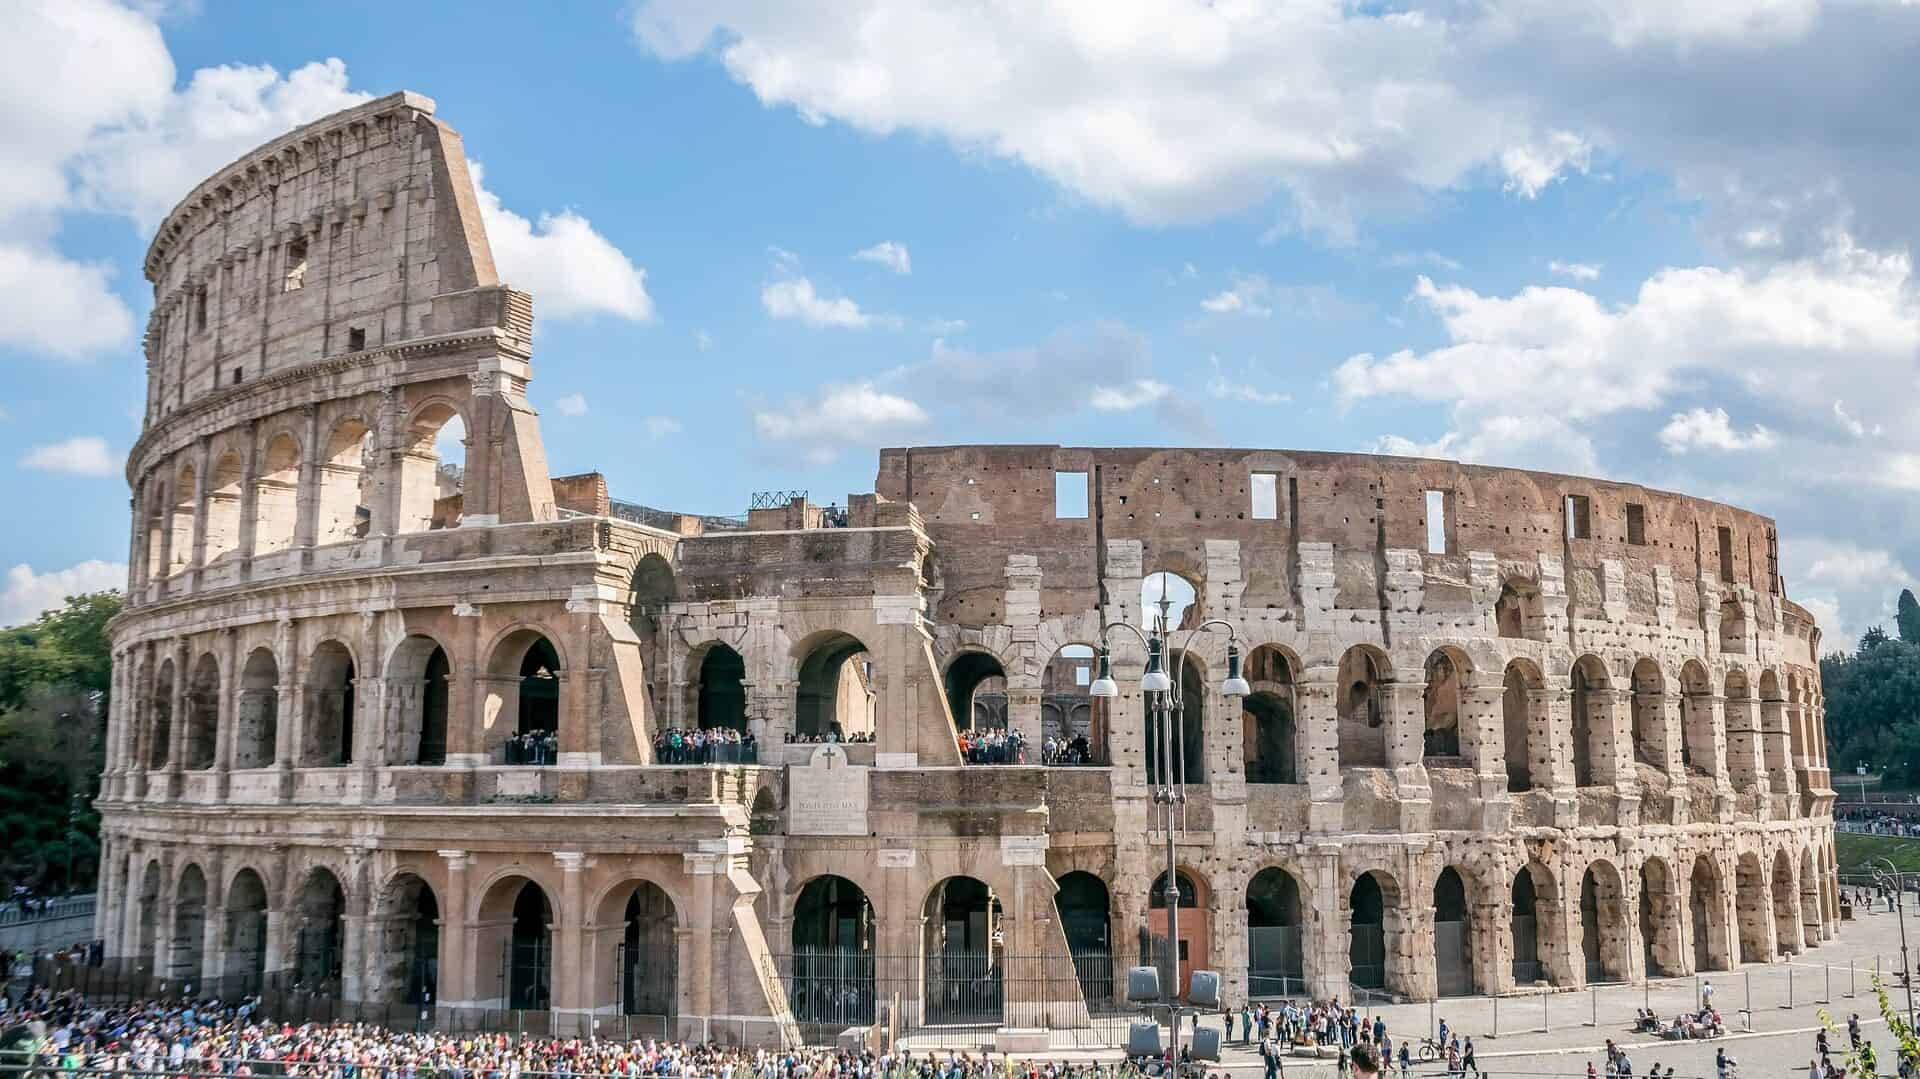 Colosseum i rom udefra